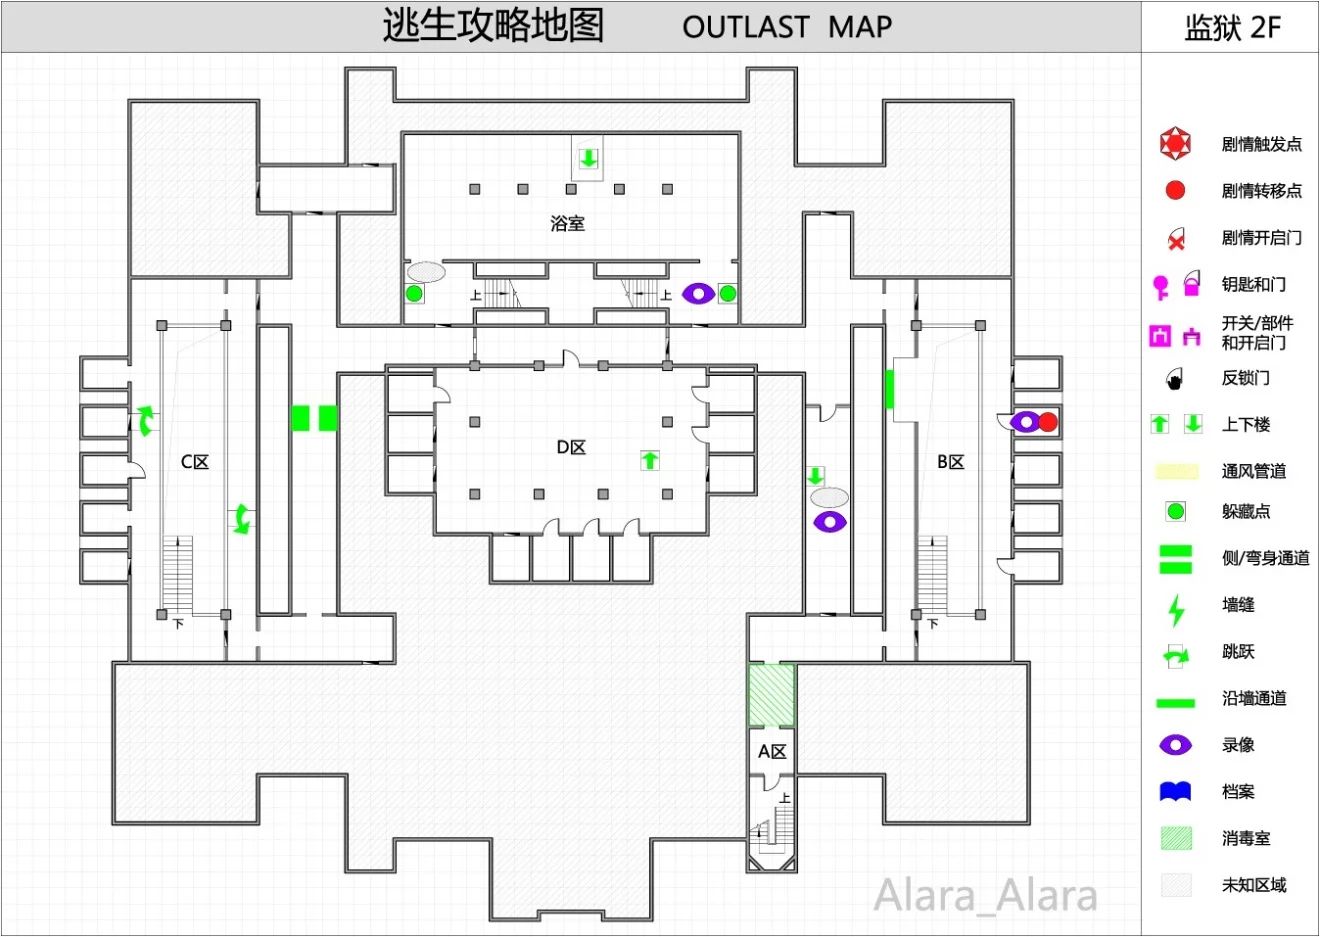 《逃生（outlast）》游戏完整地图